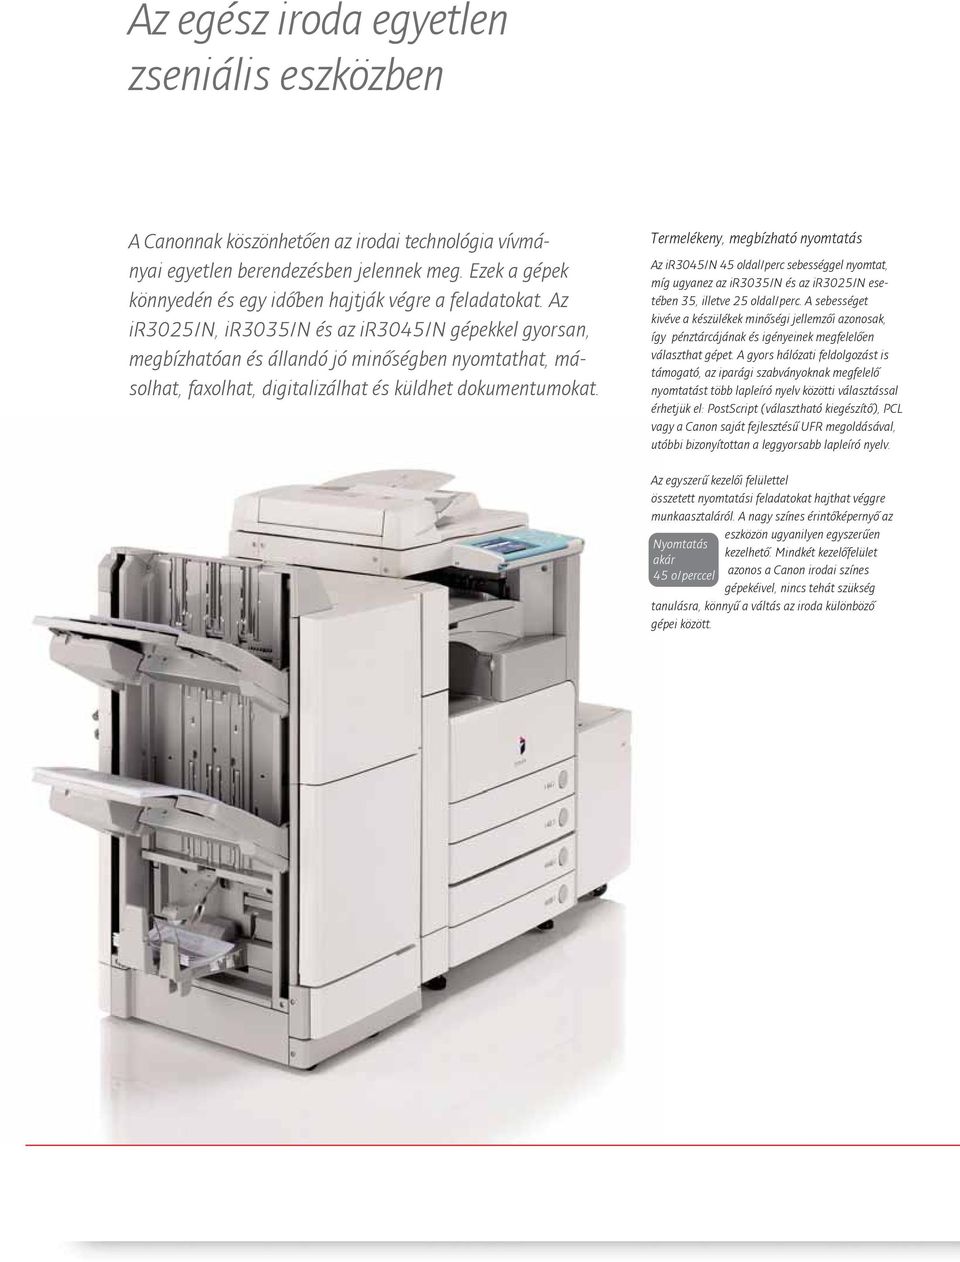 Az ir3025/n, ir3035/n és az ir3045/n gépekkel gyorsan, megbízhatóan és állandó jó minőségben nyomtathat, másolhat, faxolhat, digitalizálhat és küldhet dokumentumokat.